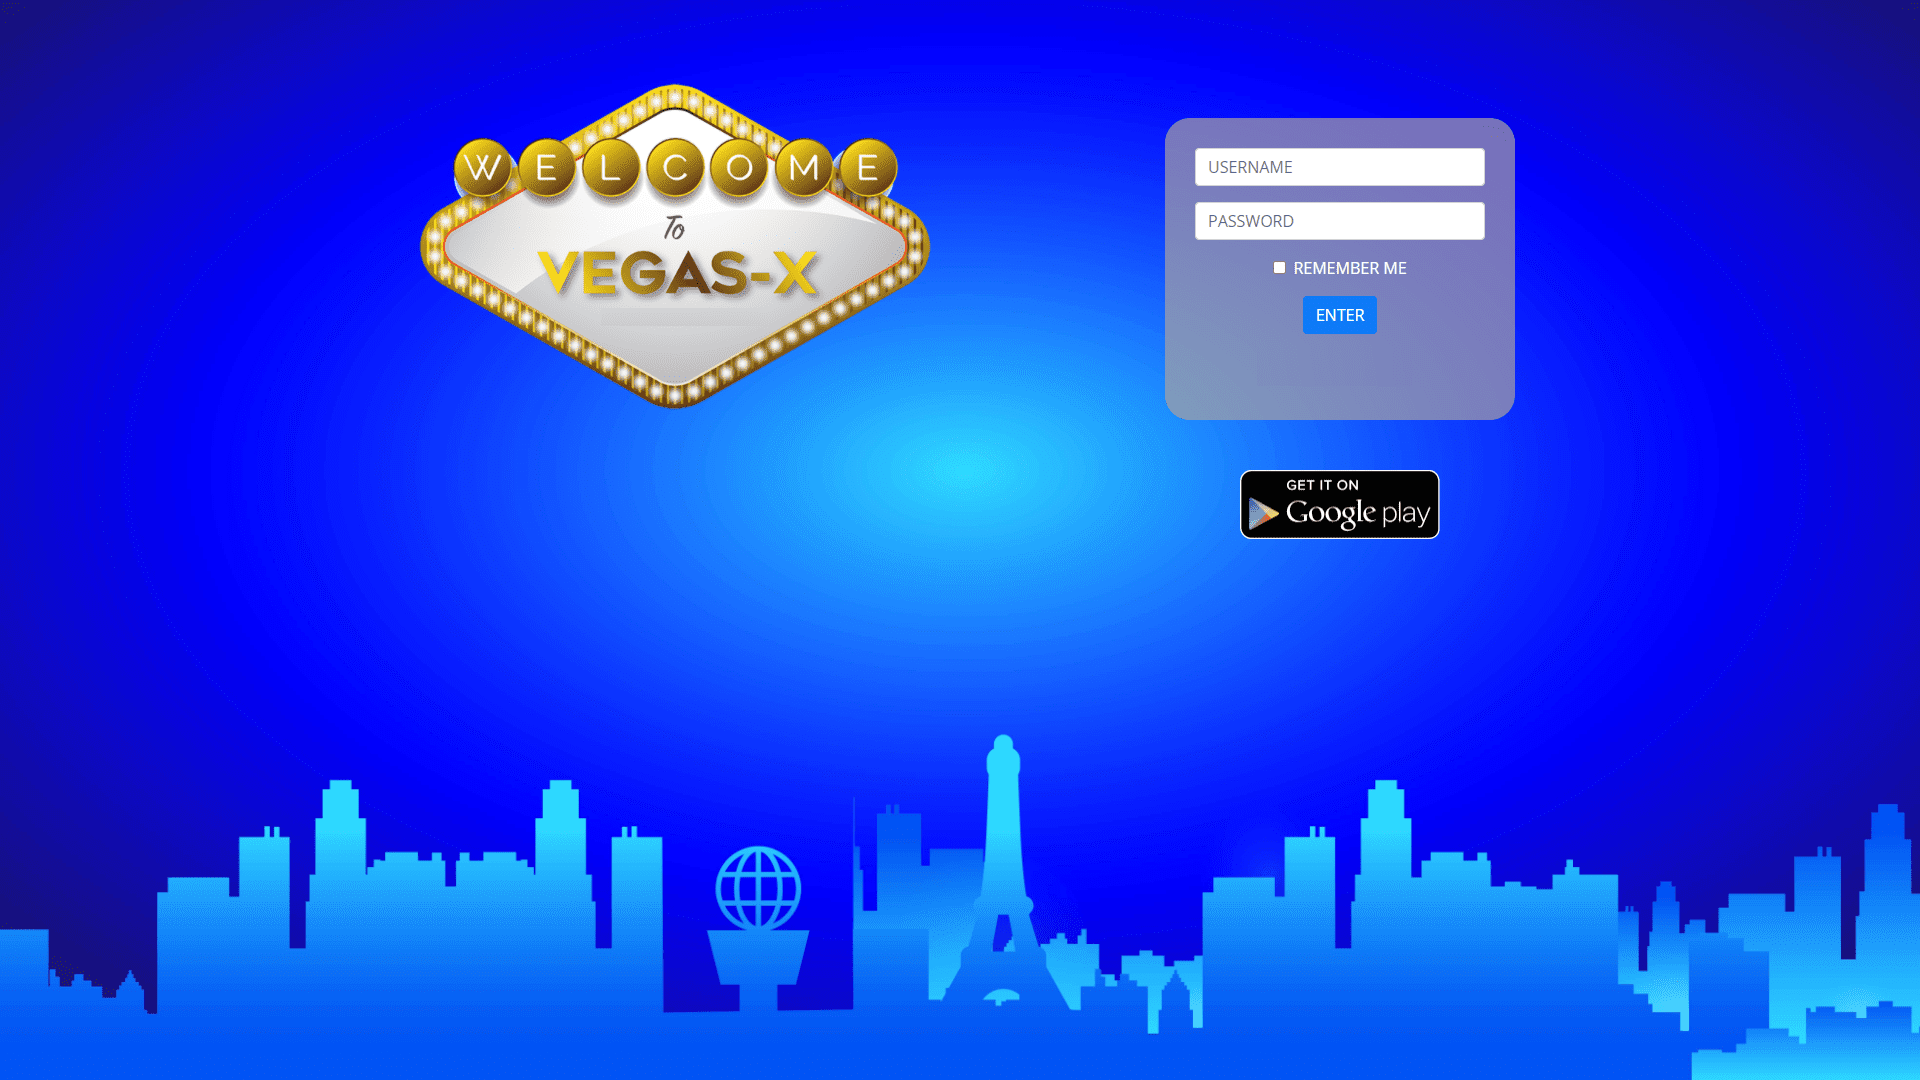 Vegas Image 5.0.0.0 for windows download free